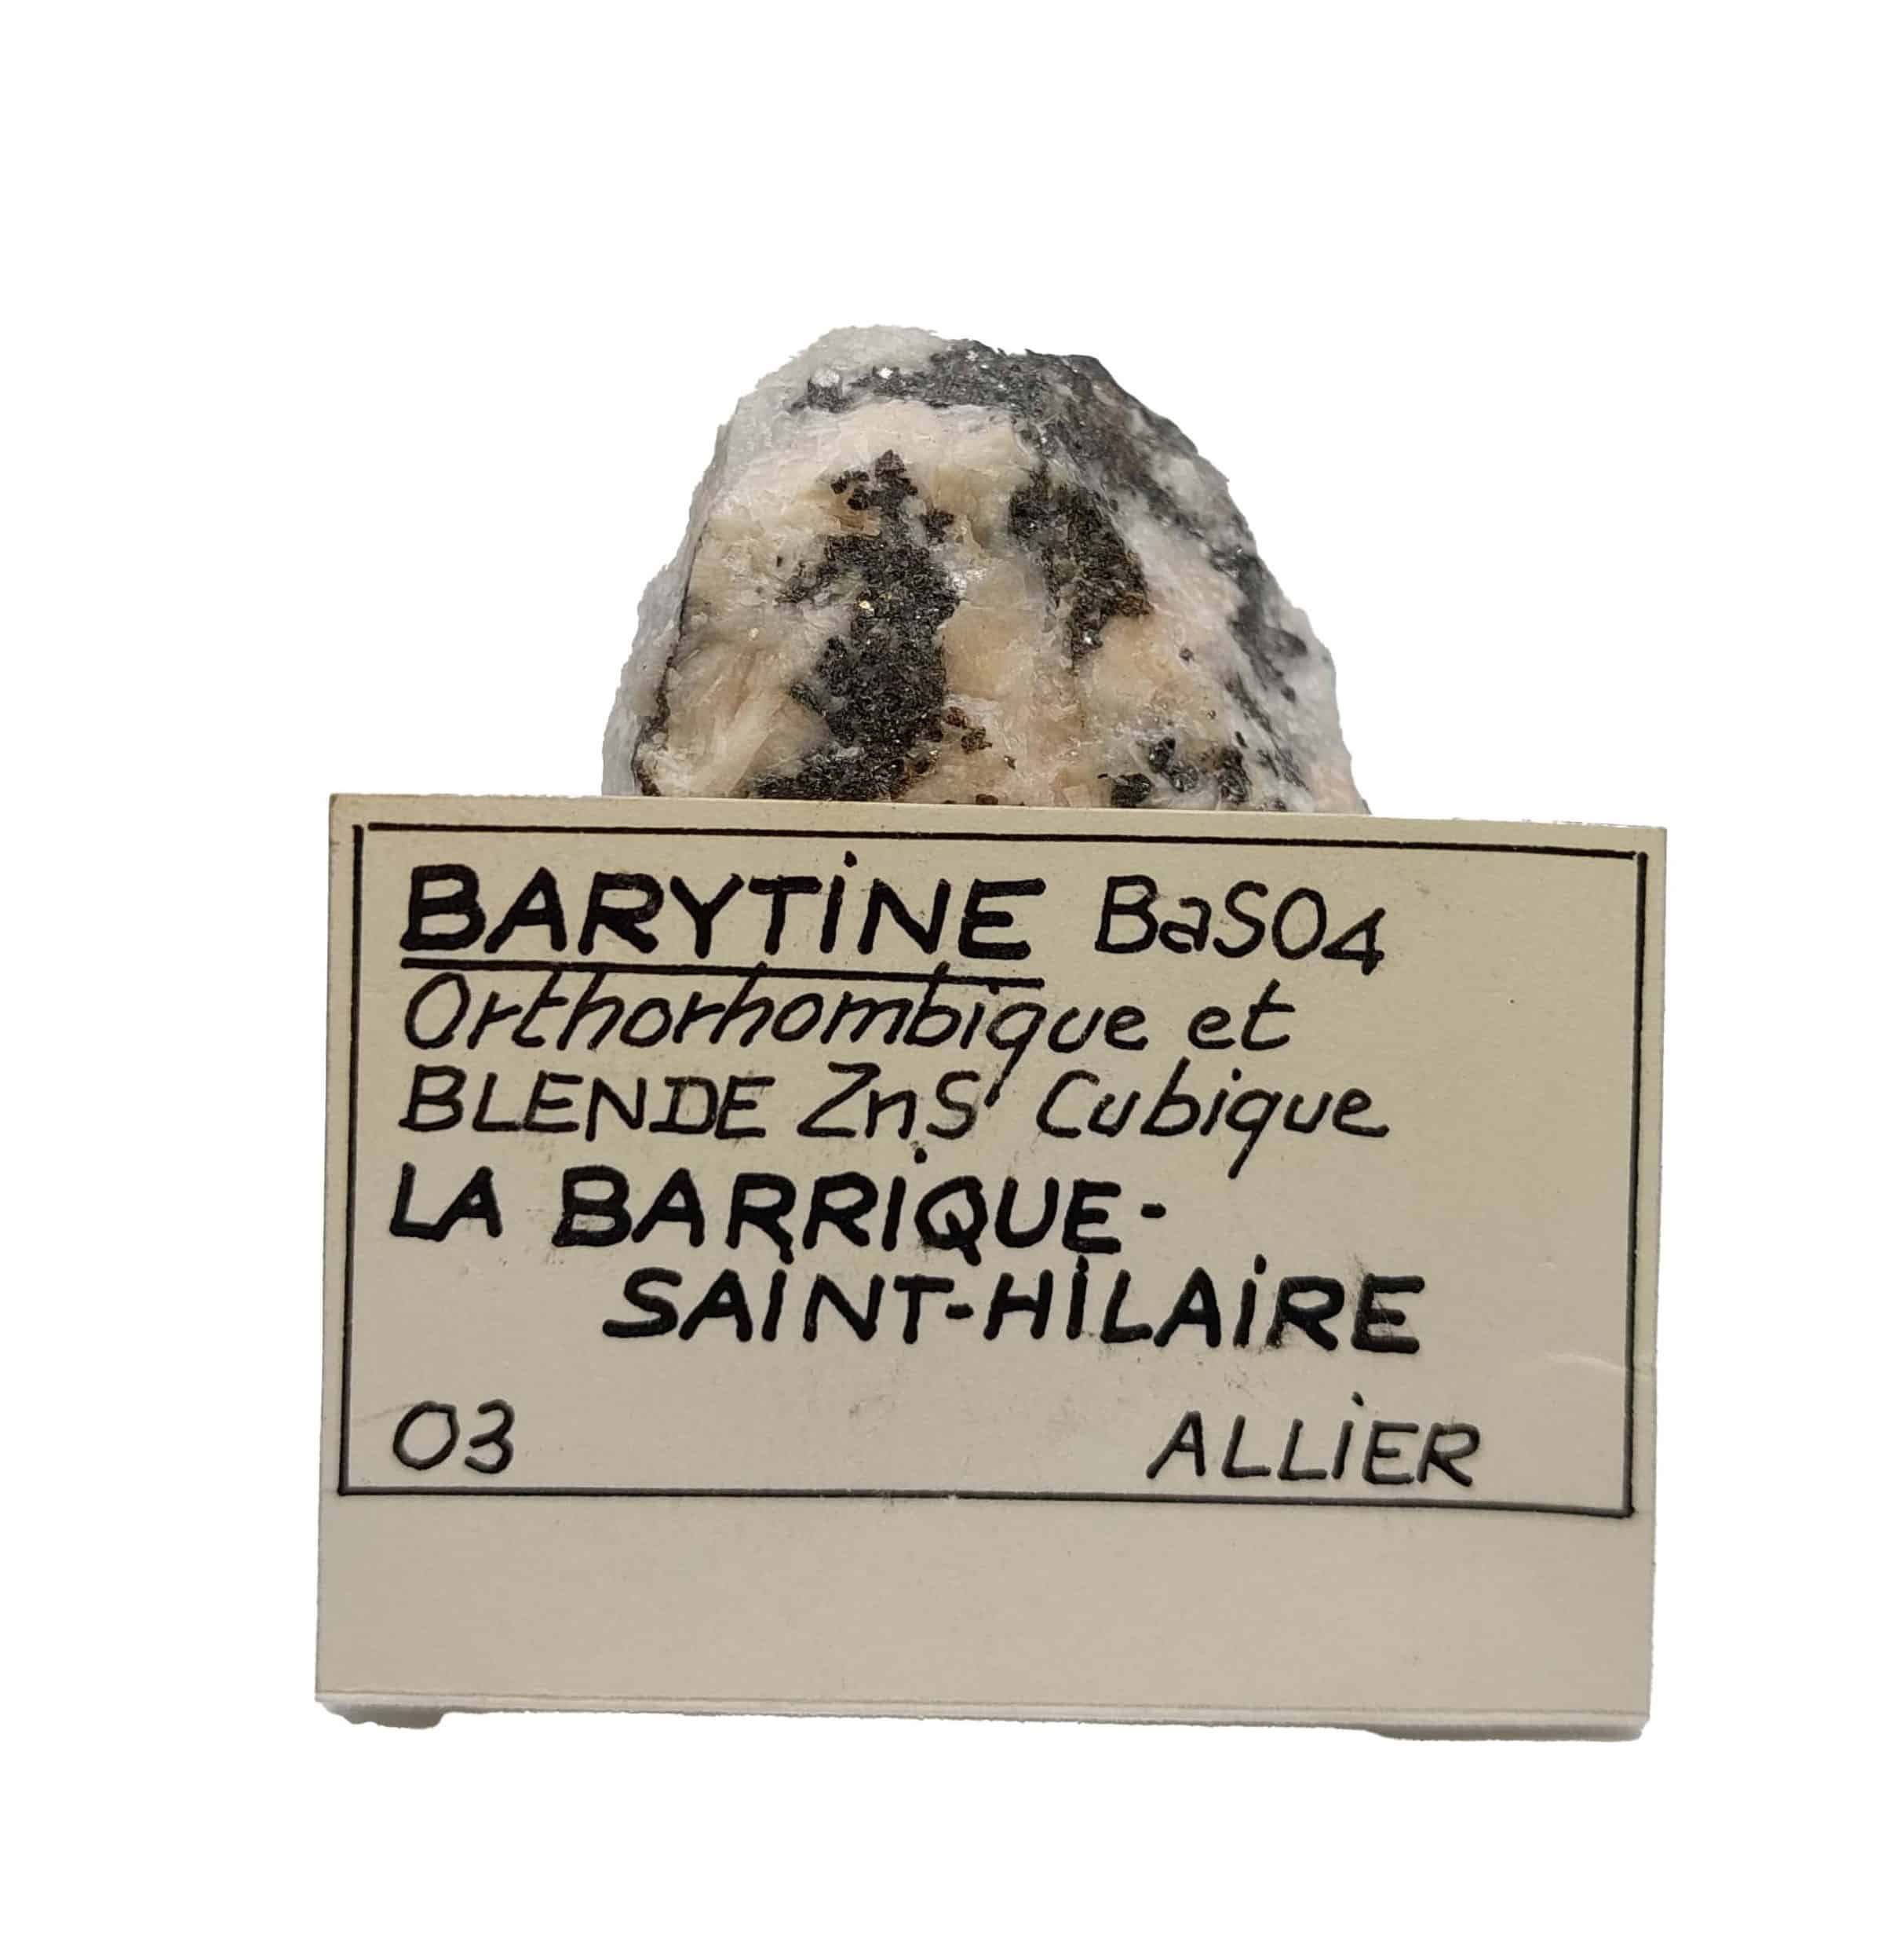 Barytine et Blende, La Barrique, Saint-Hilaire, Allier.